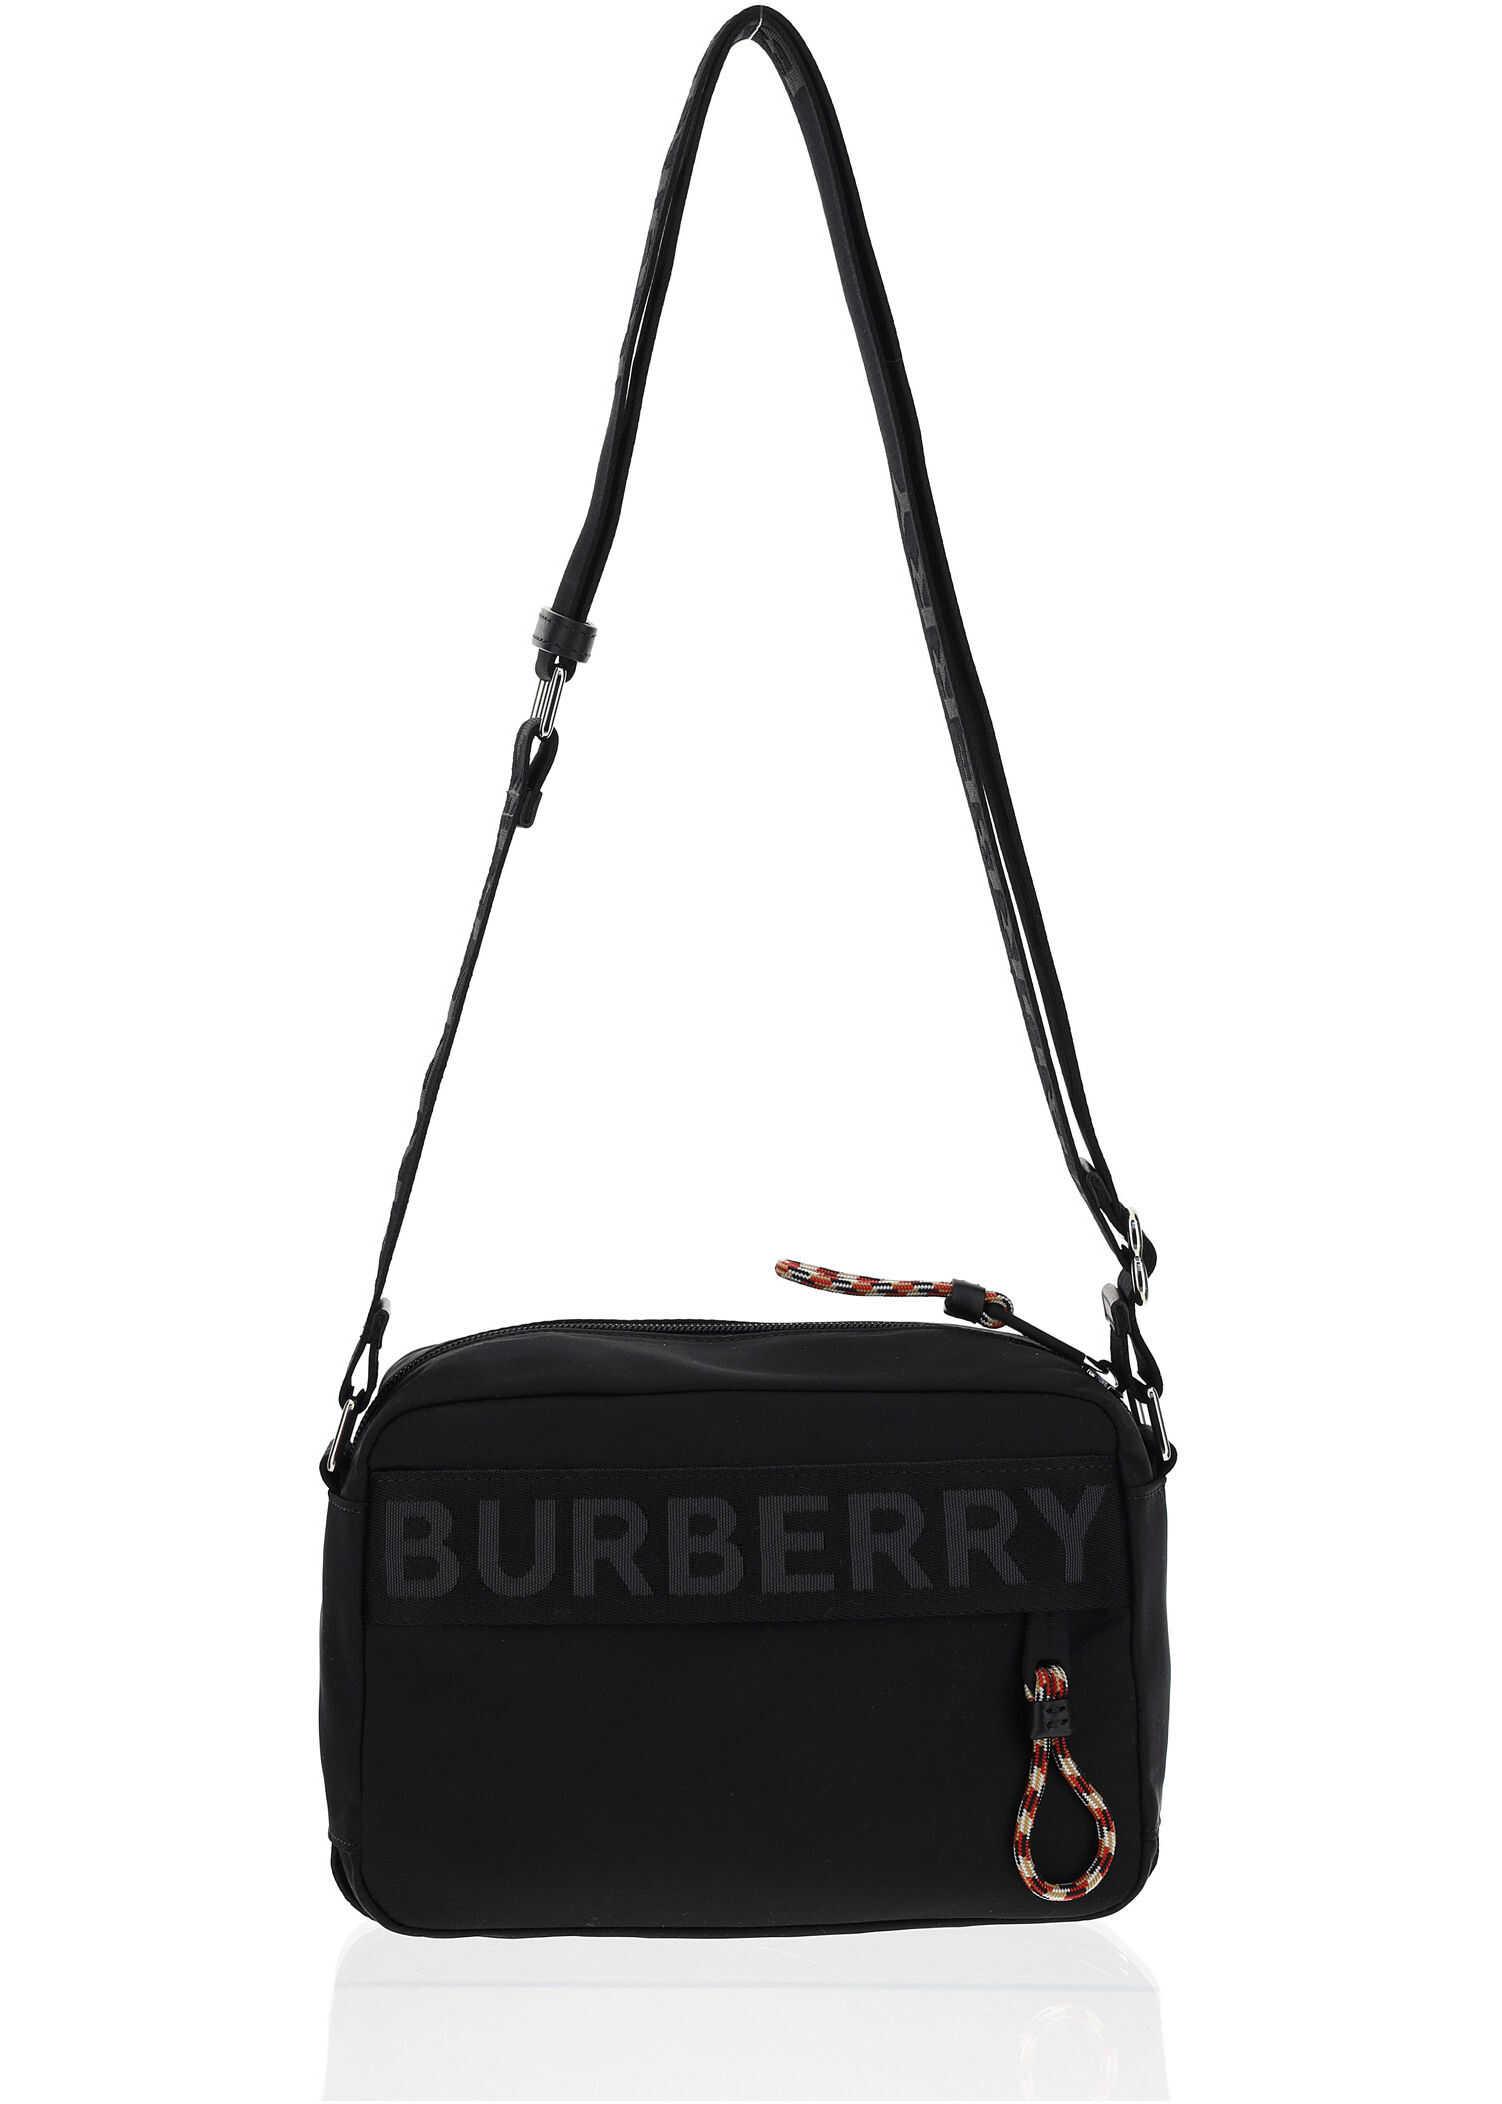 Burberry Paddy Shoulder Bag 8025669 BLACK